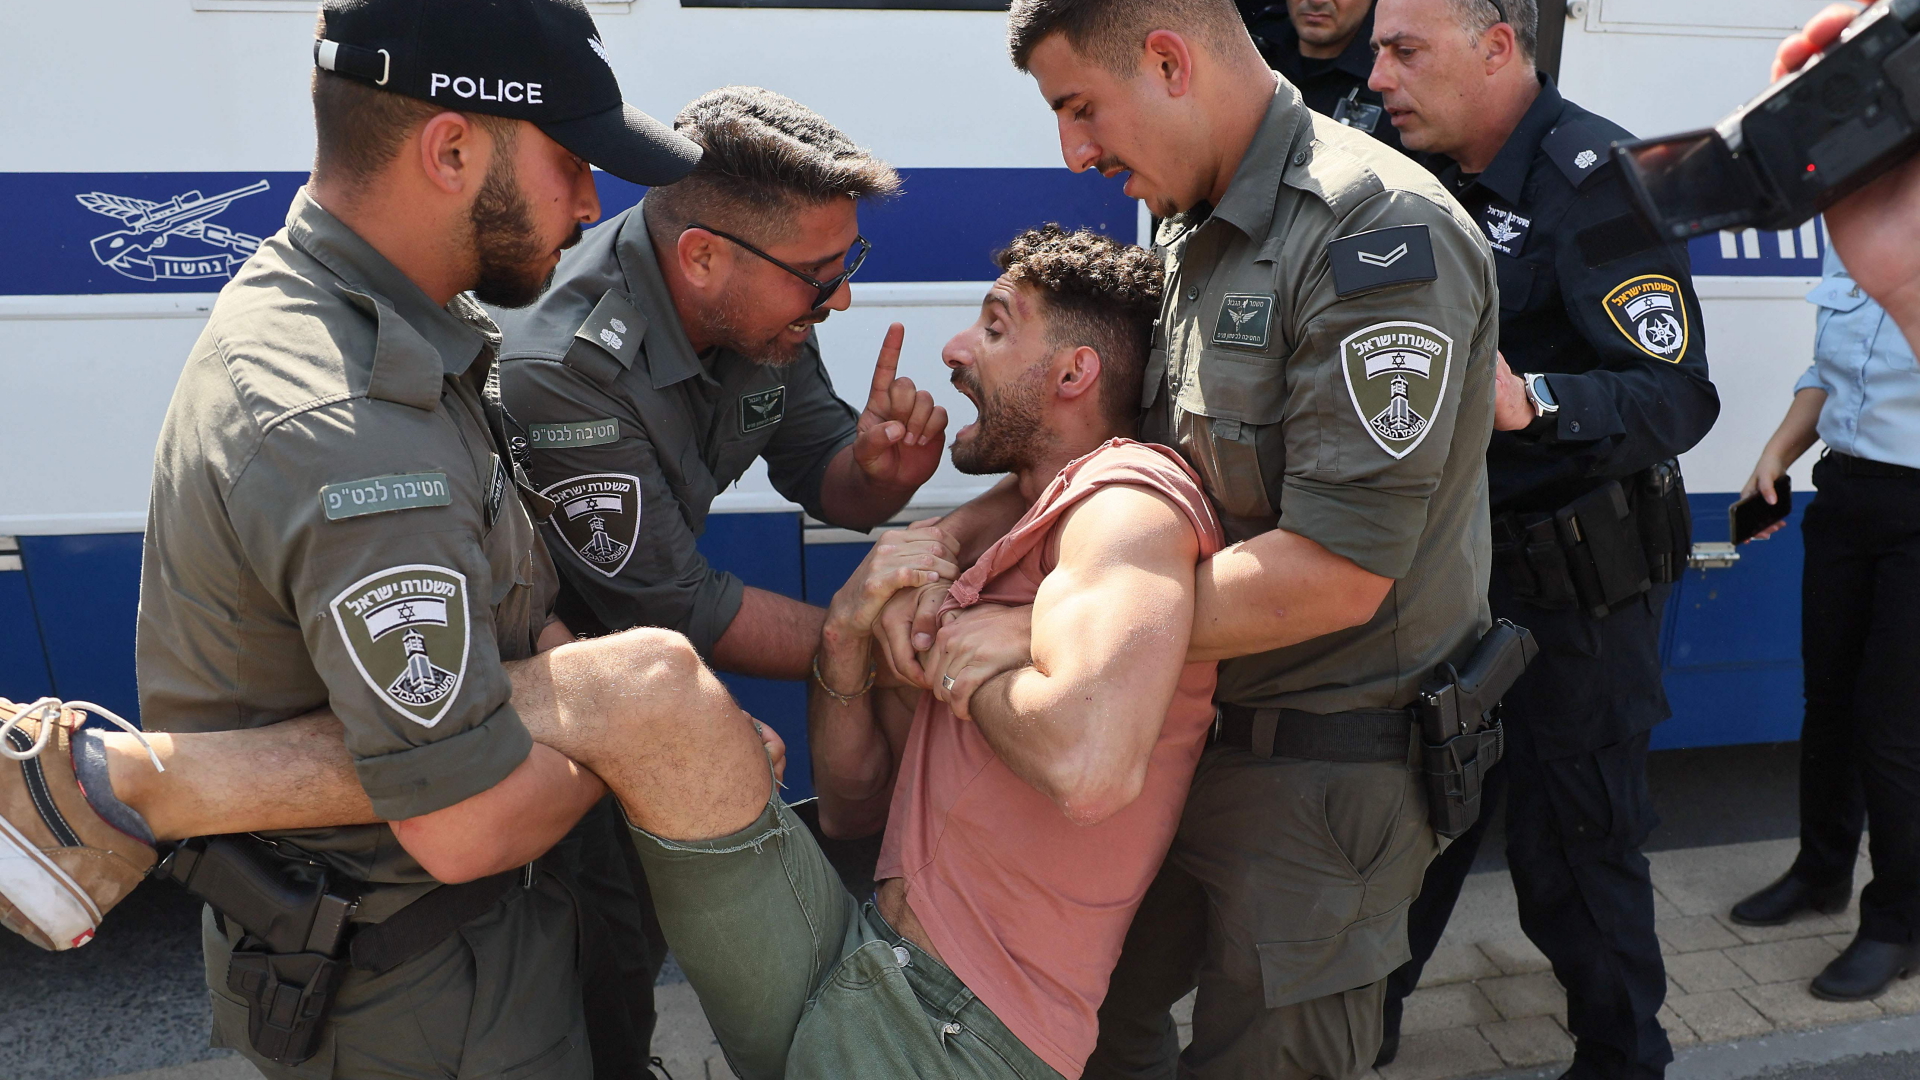 Justizreform in der Knesset: Drinnen Zustimmung, draußen Protest